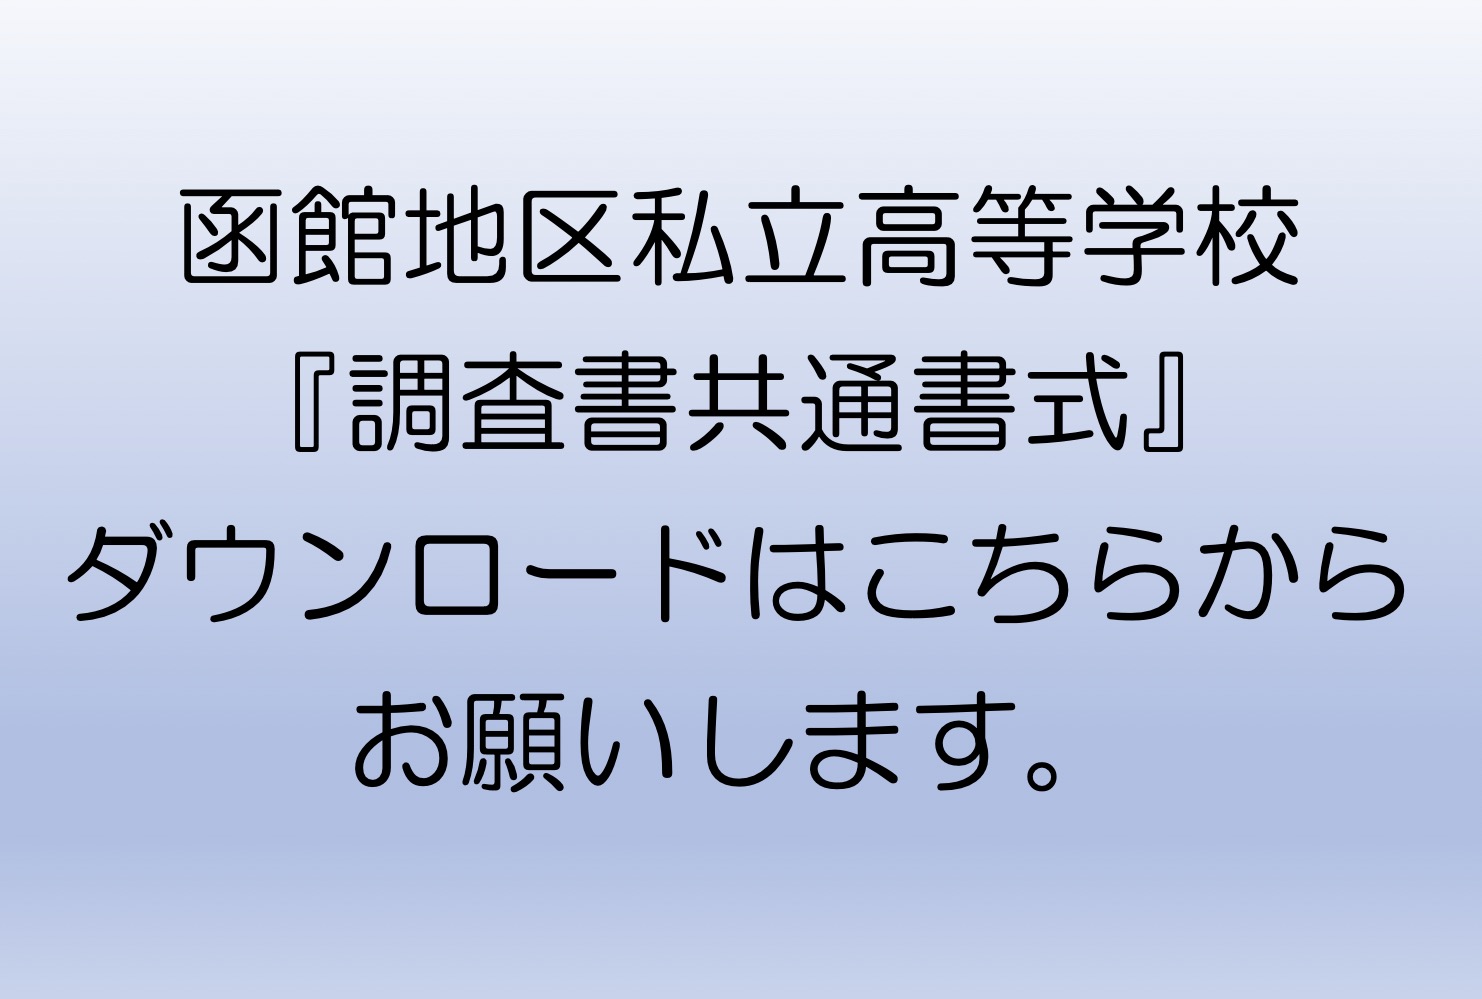 『函館地区私立高等学校調査書共通書式』ダウンロードはこちらからお願いします。